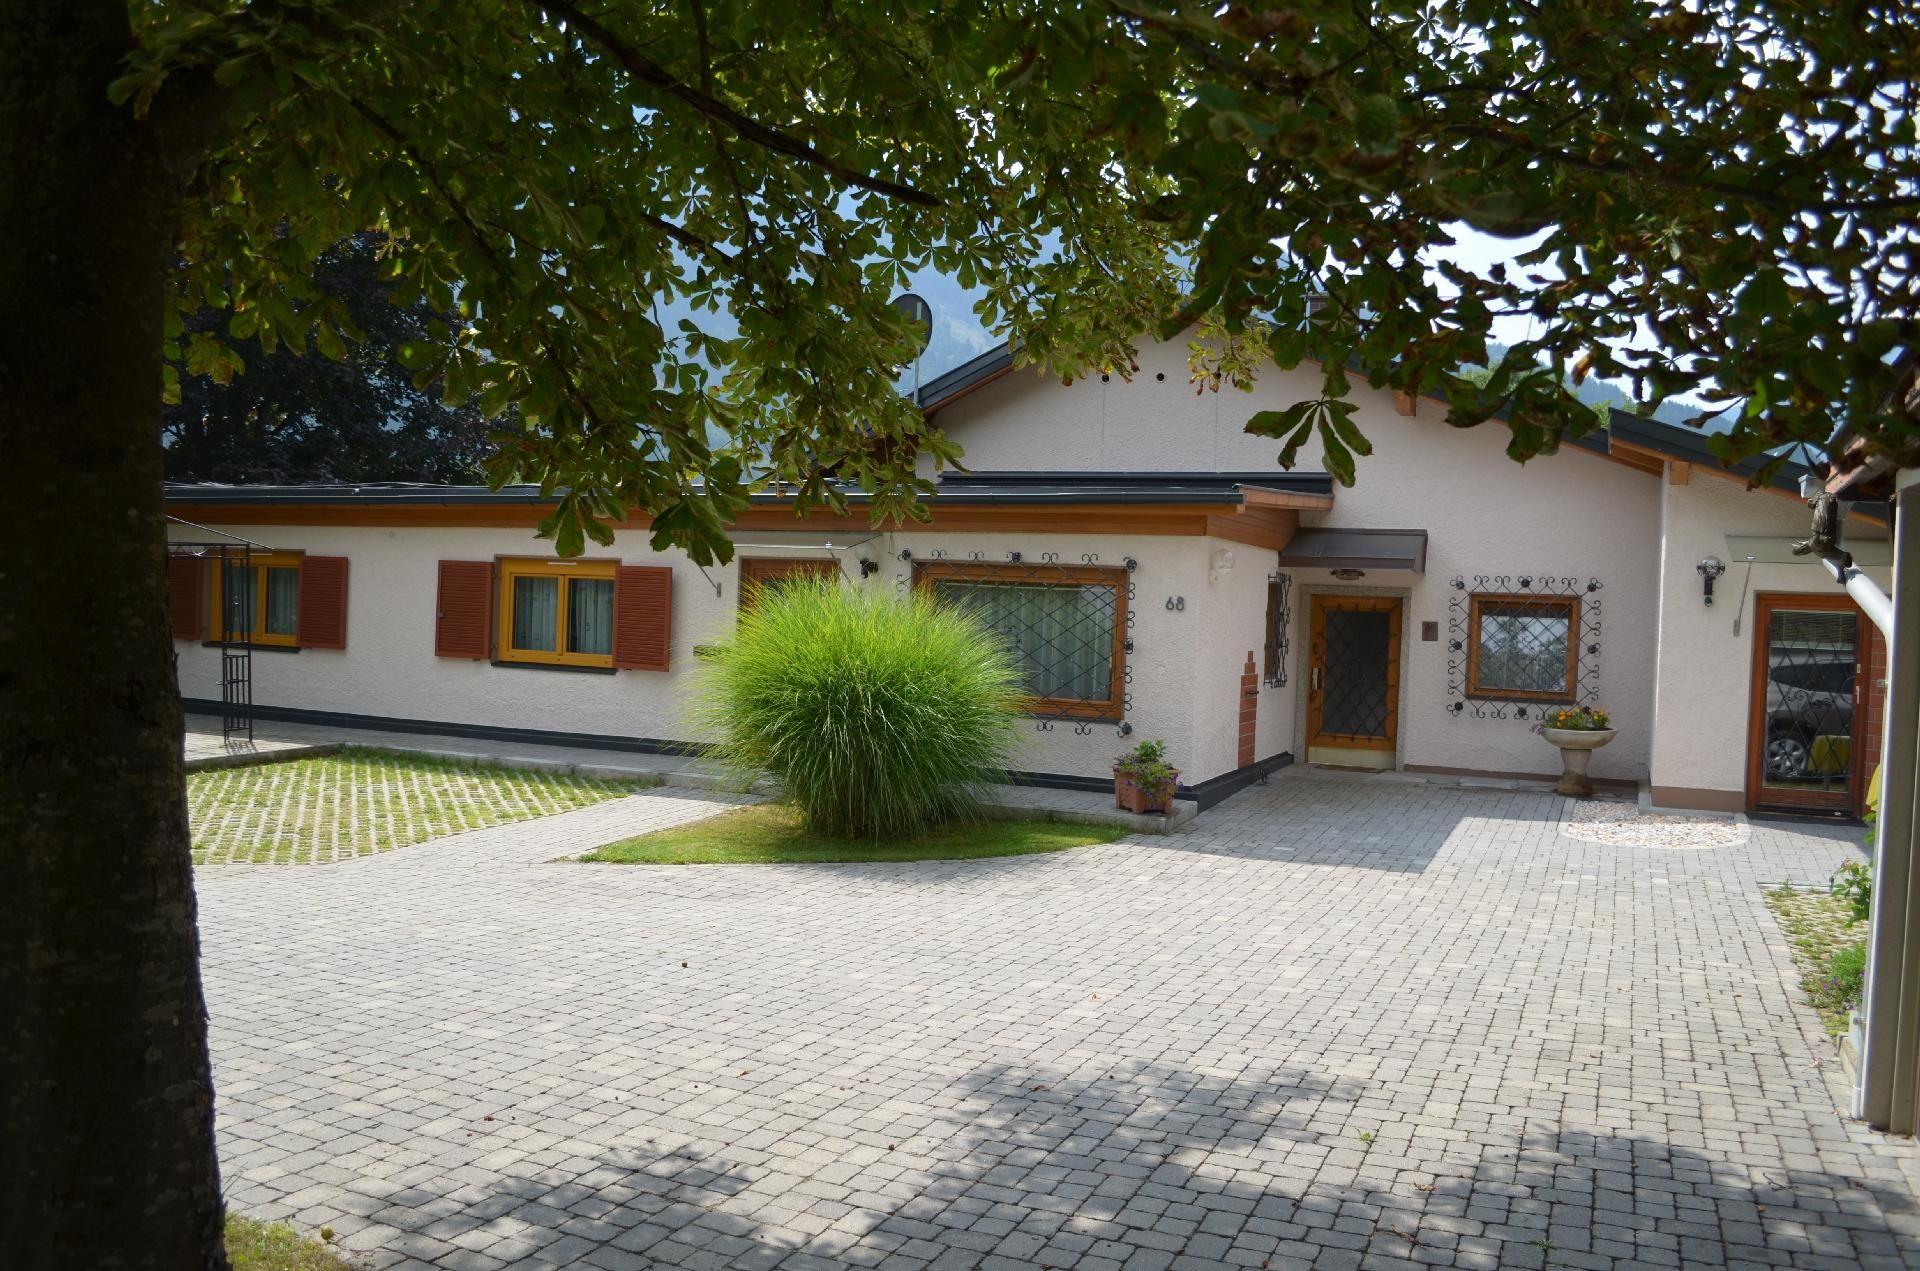 Geräumige Wohnung in Gemeinde Flattach mit Gr Ferienhaus 